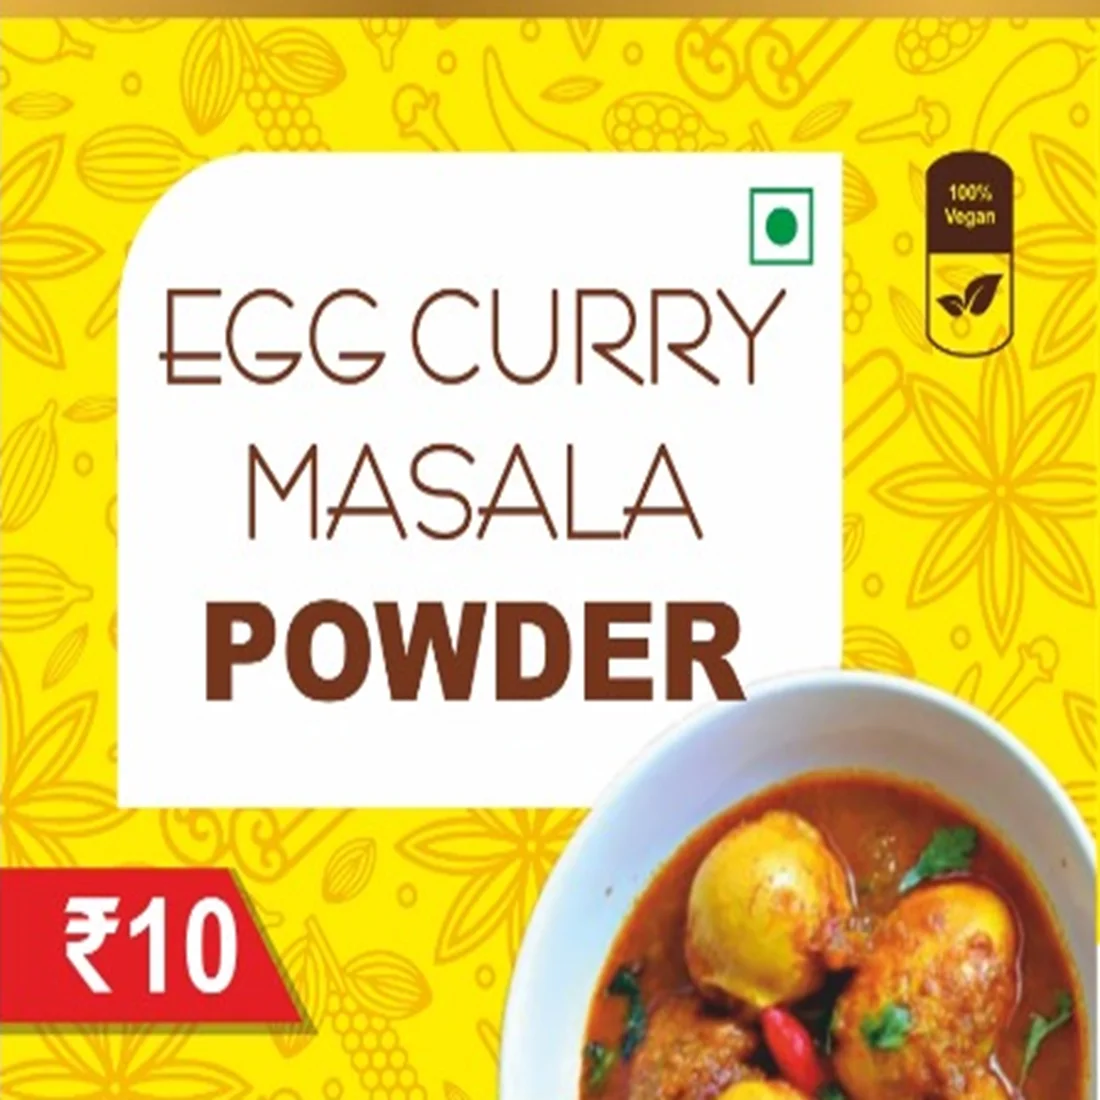 Egg Curry masala powder